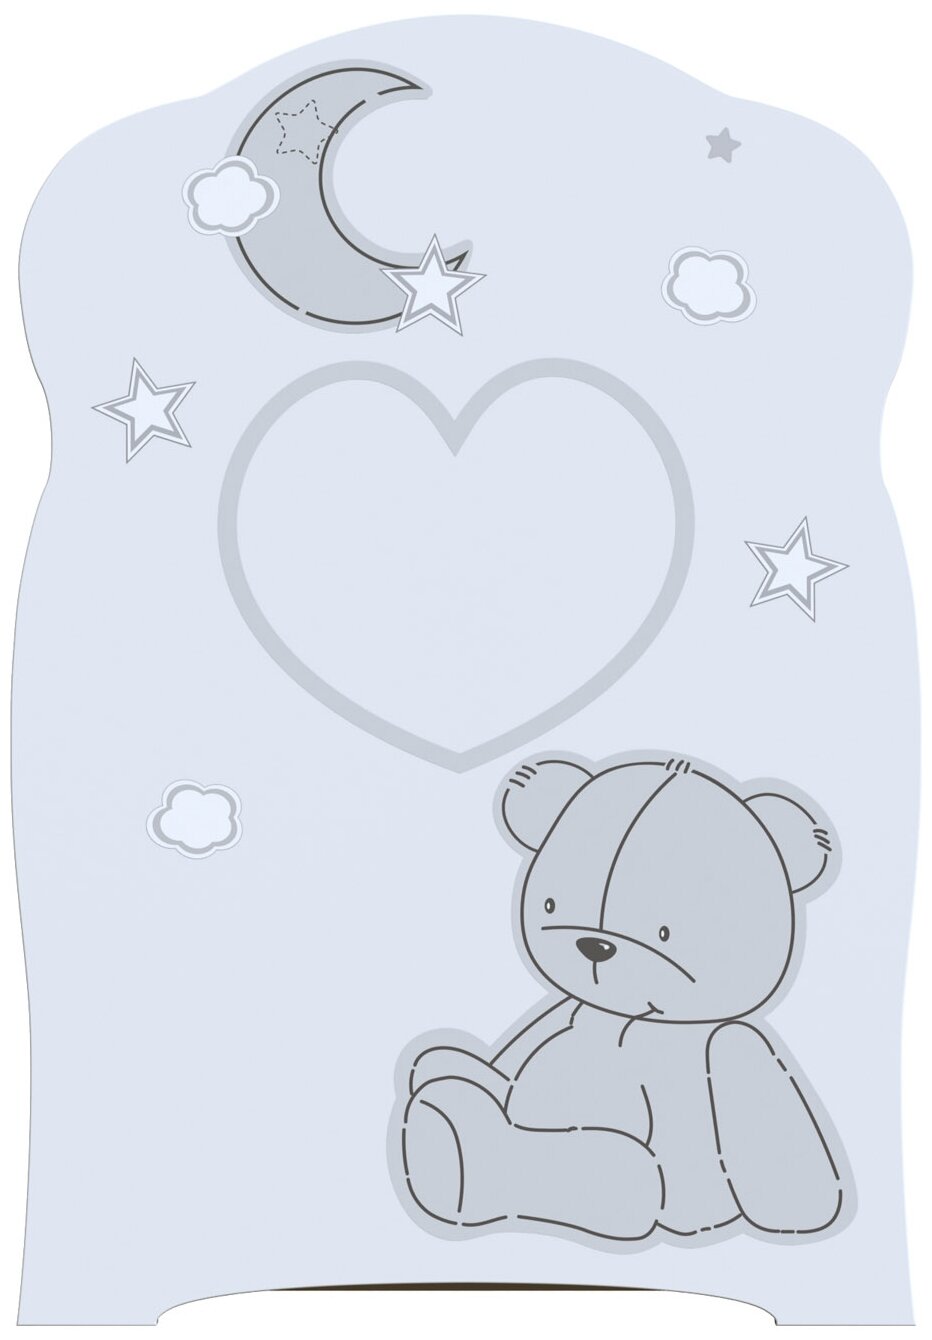 Кроватка детская для новорожденных ВДК BEAR AND MOON с маятником и ящиком для белья, ЛДСП, белый